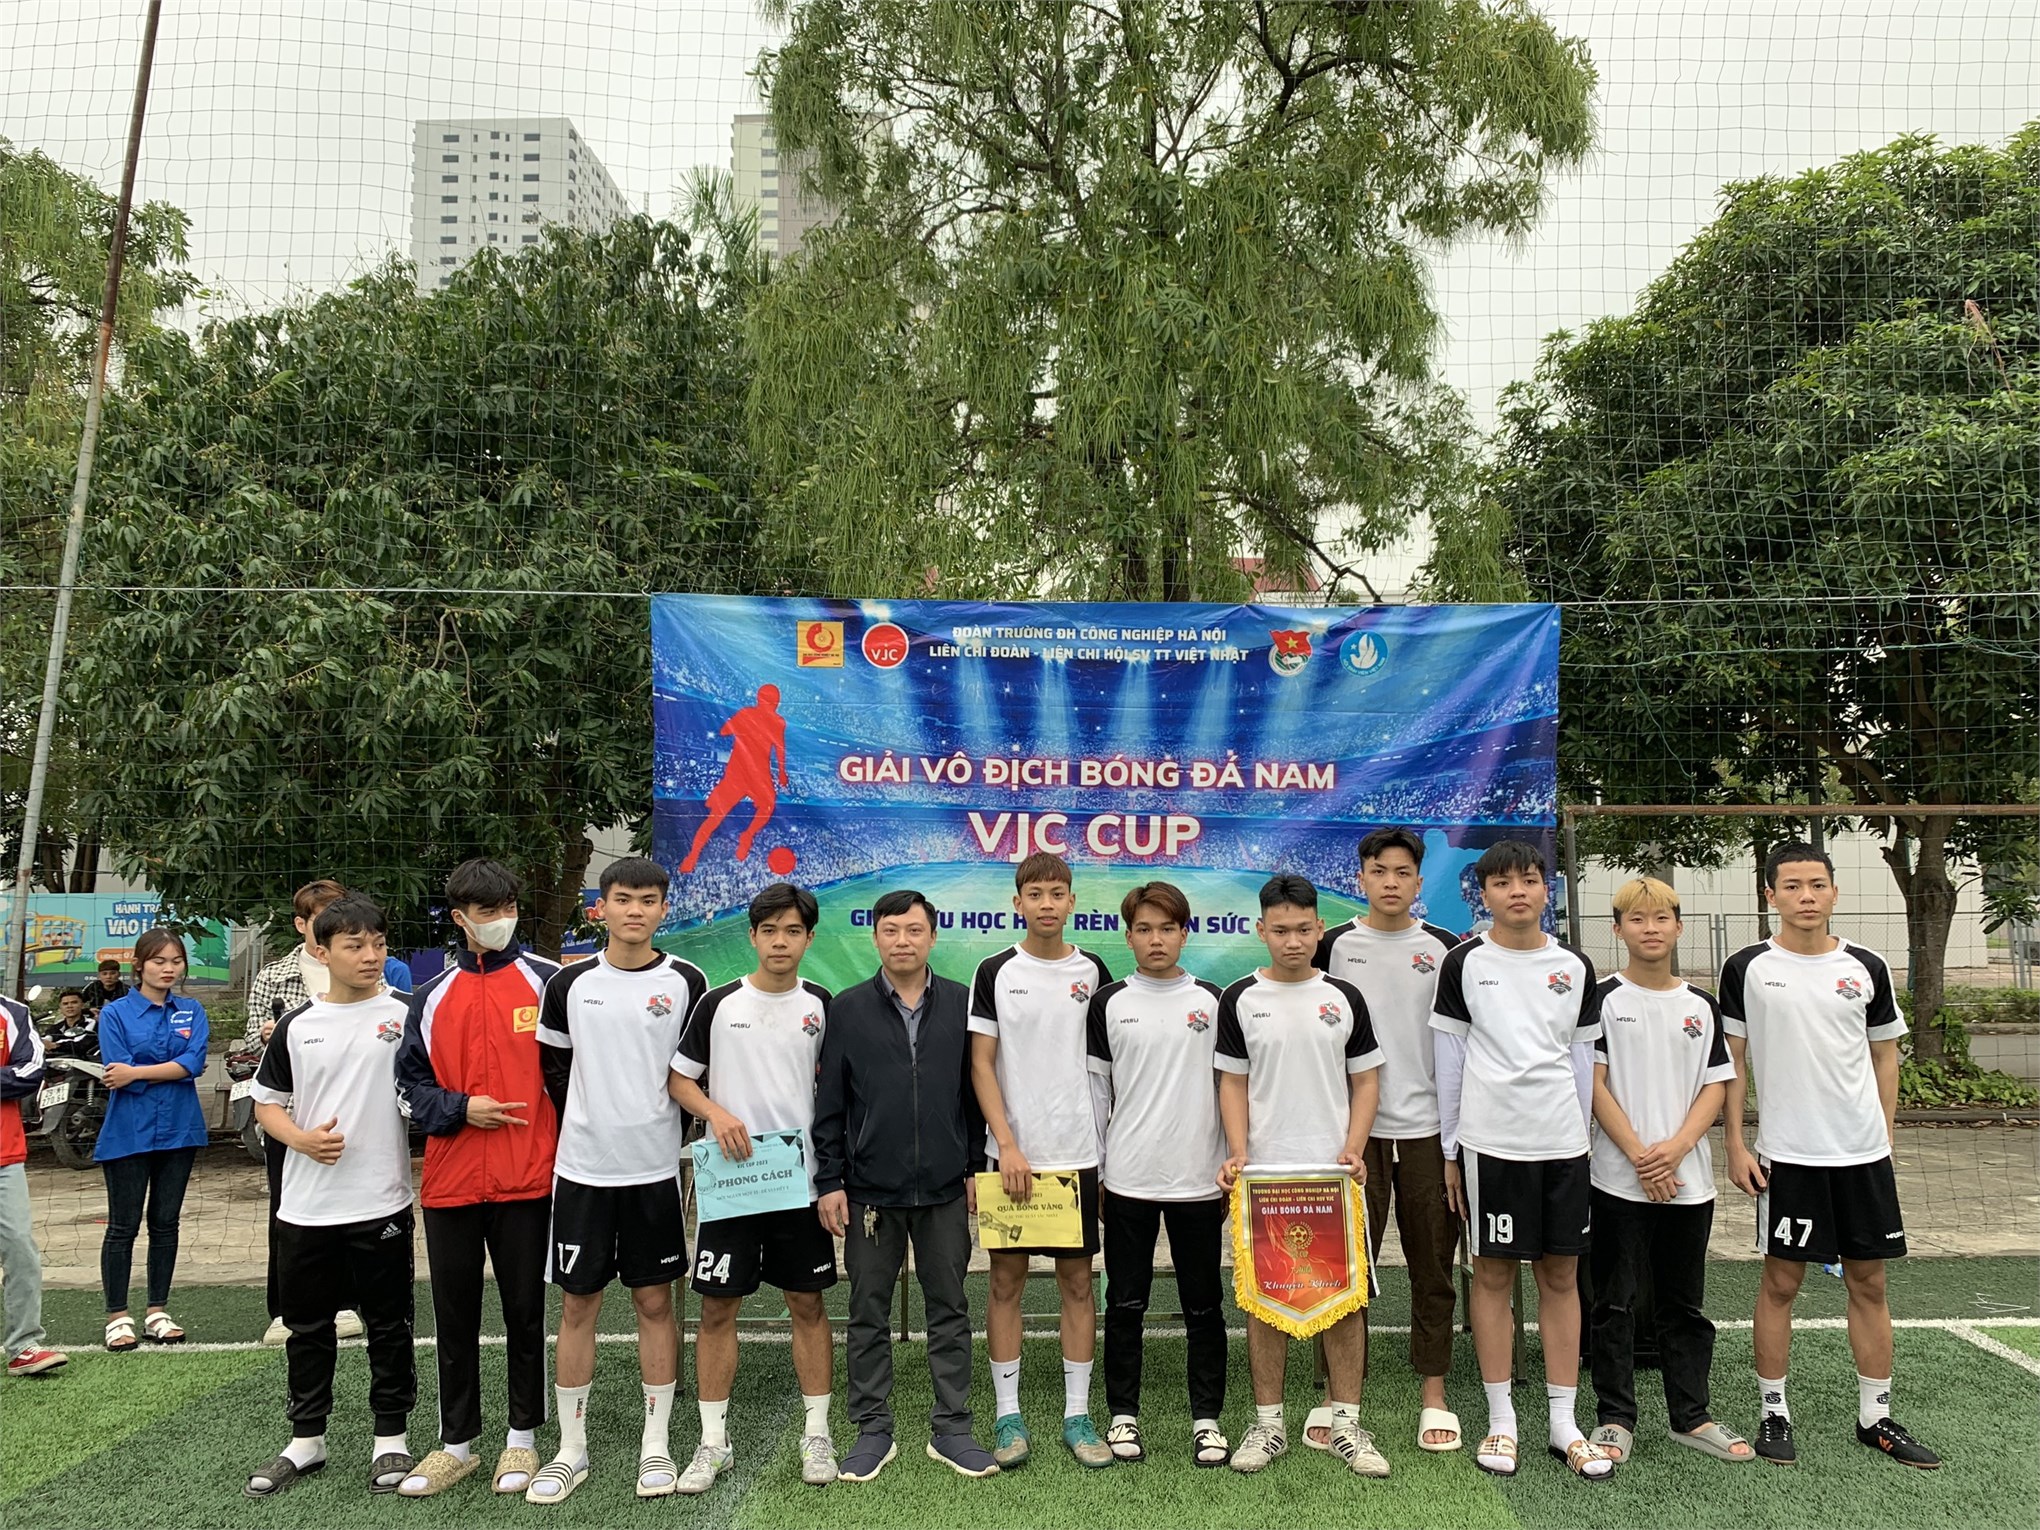 Chung kết và trao giải bóng đá nam sinh viên TT Việt Nhật